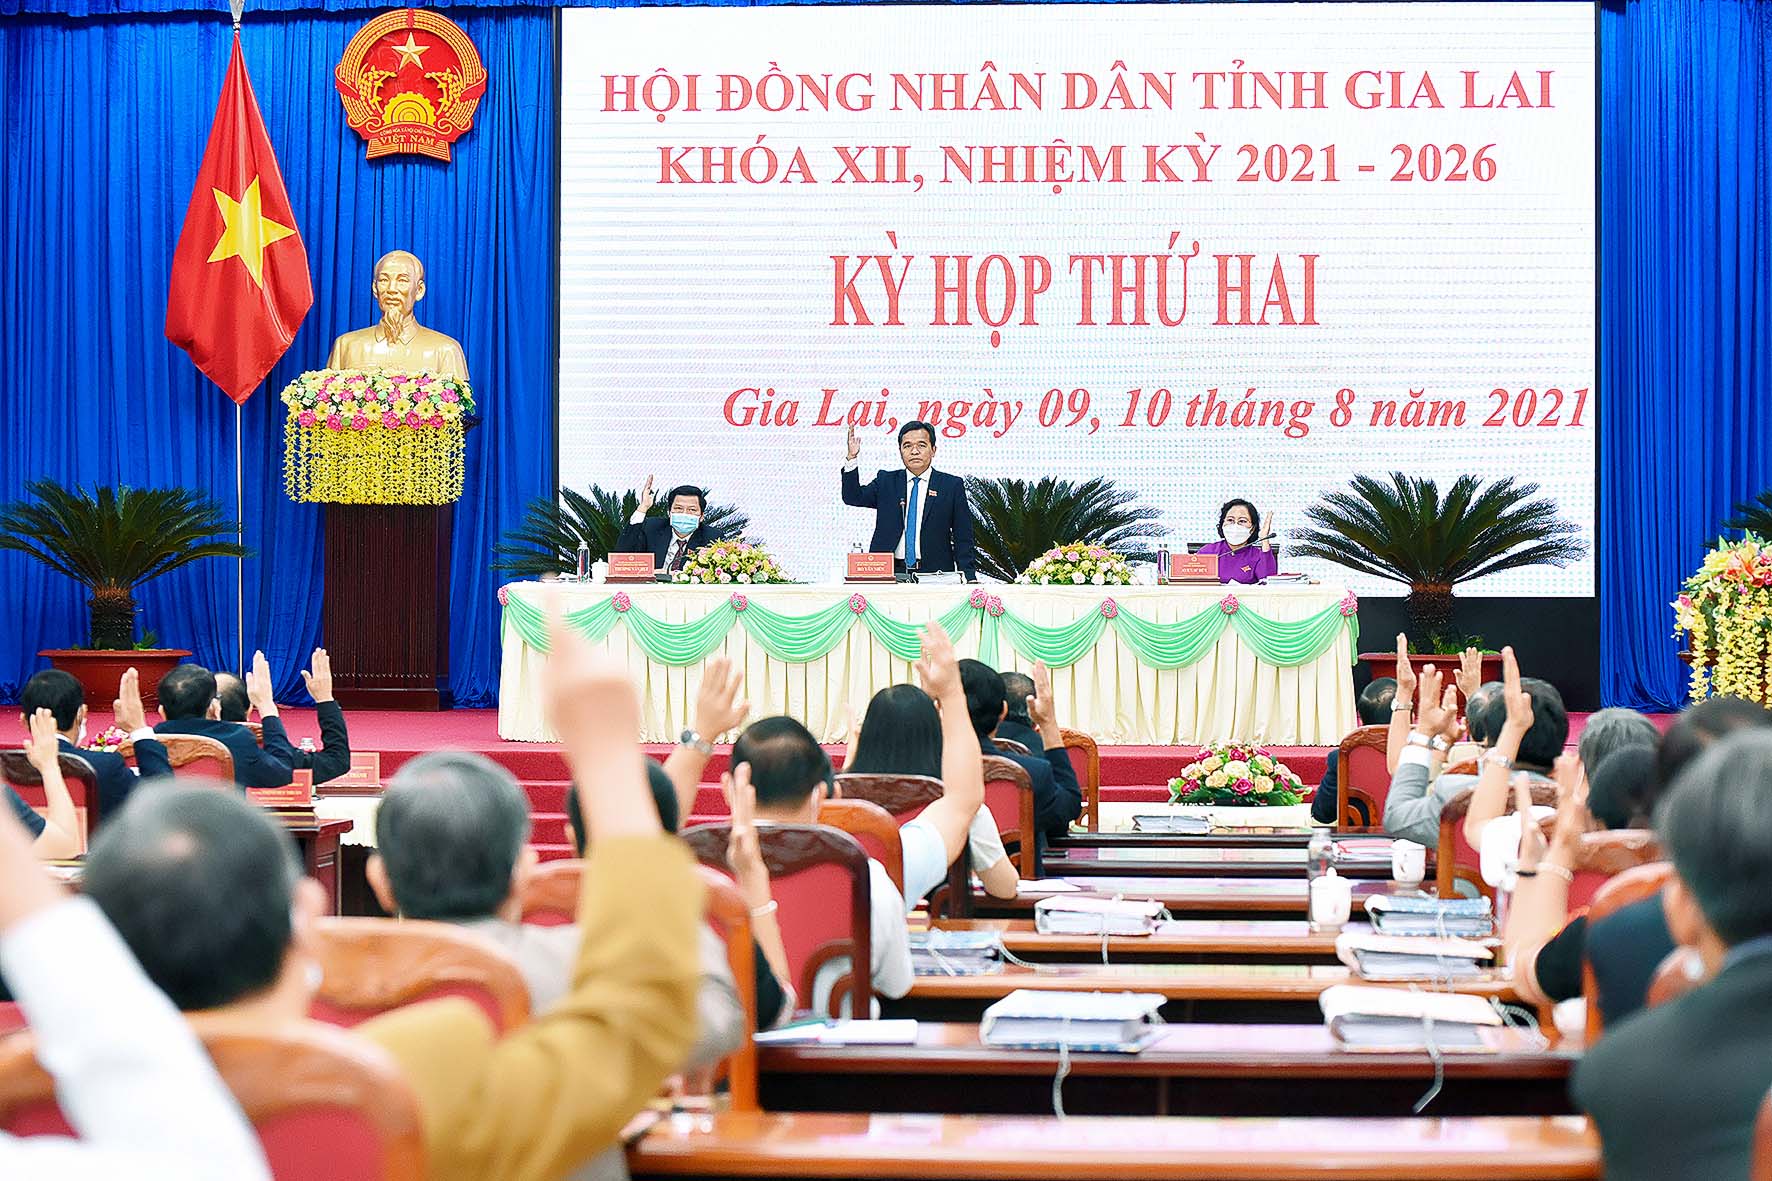 Hội đồng nhân dân tỉnh Gia Lai ban hành chương trình giám sát năm 2022